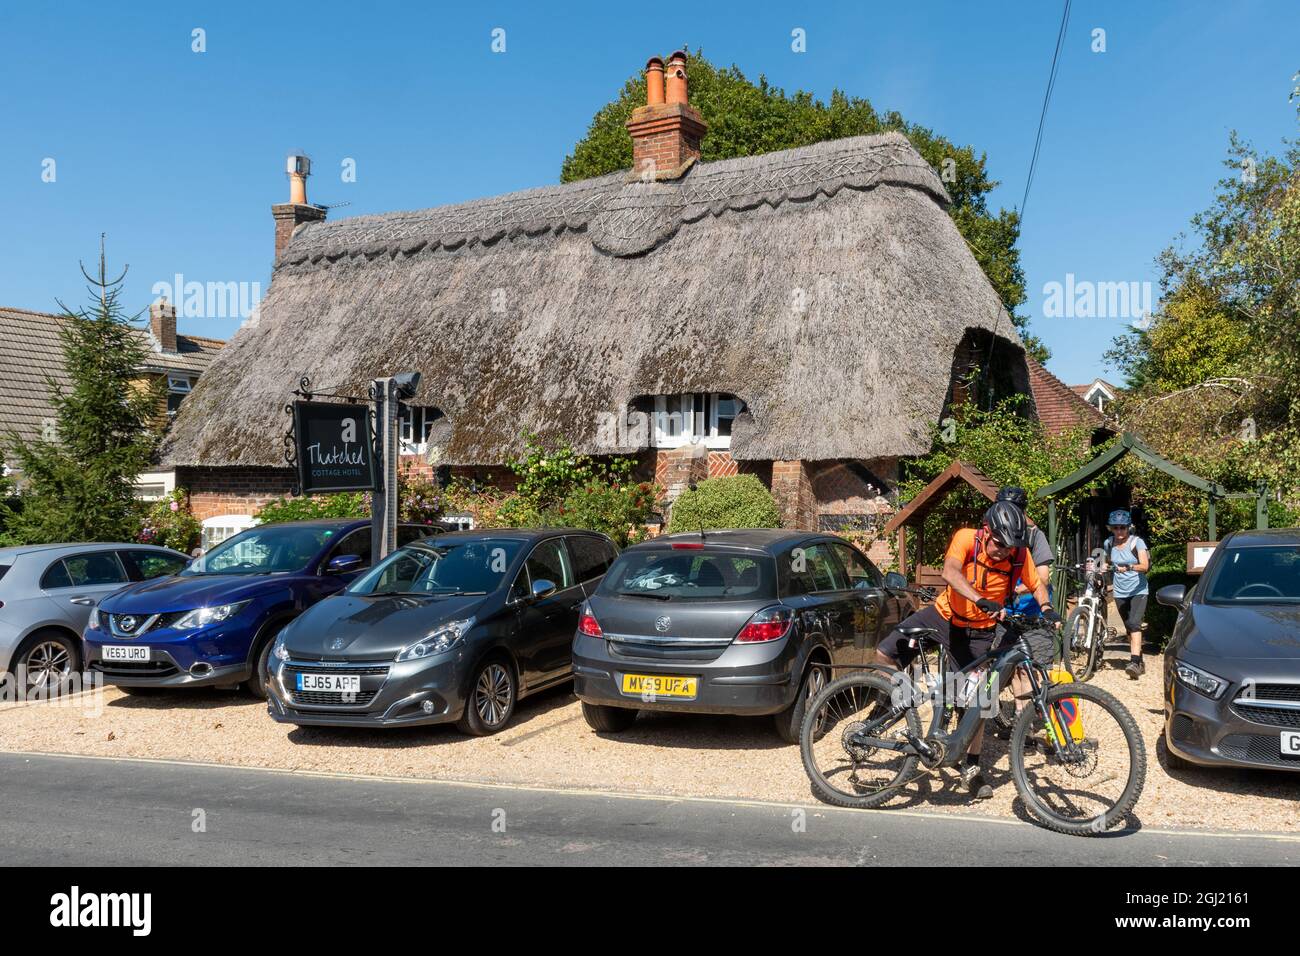 Cyclistes à l'extérieur du thatched Cottage Hotel dans le village New Forest de Brockenhurst, Hampshire, Angleterre, Royaume-Uni Banque D'Images